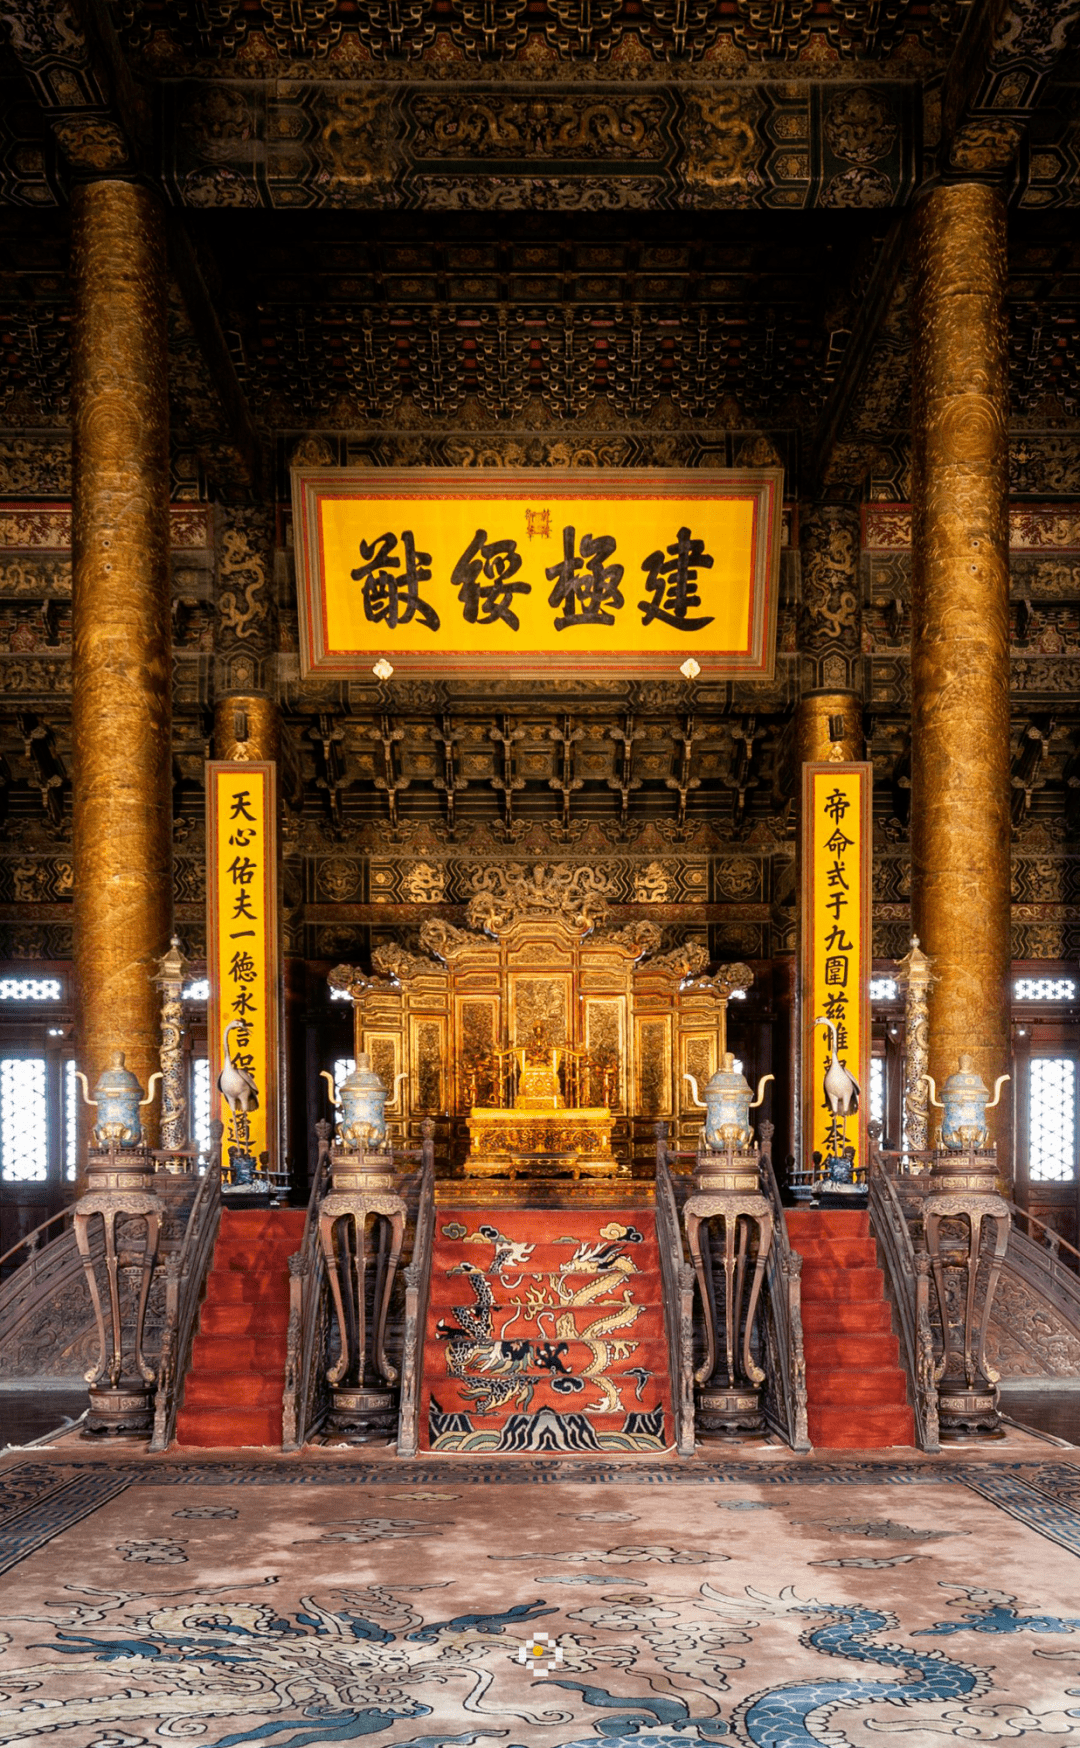 15 北京故宫太和殿内的金漆蟠龙宝座与金漆雕龙围屏-传统艺术-图片